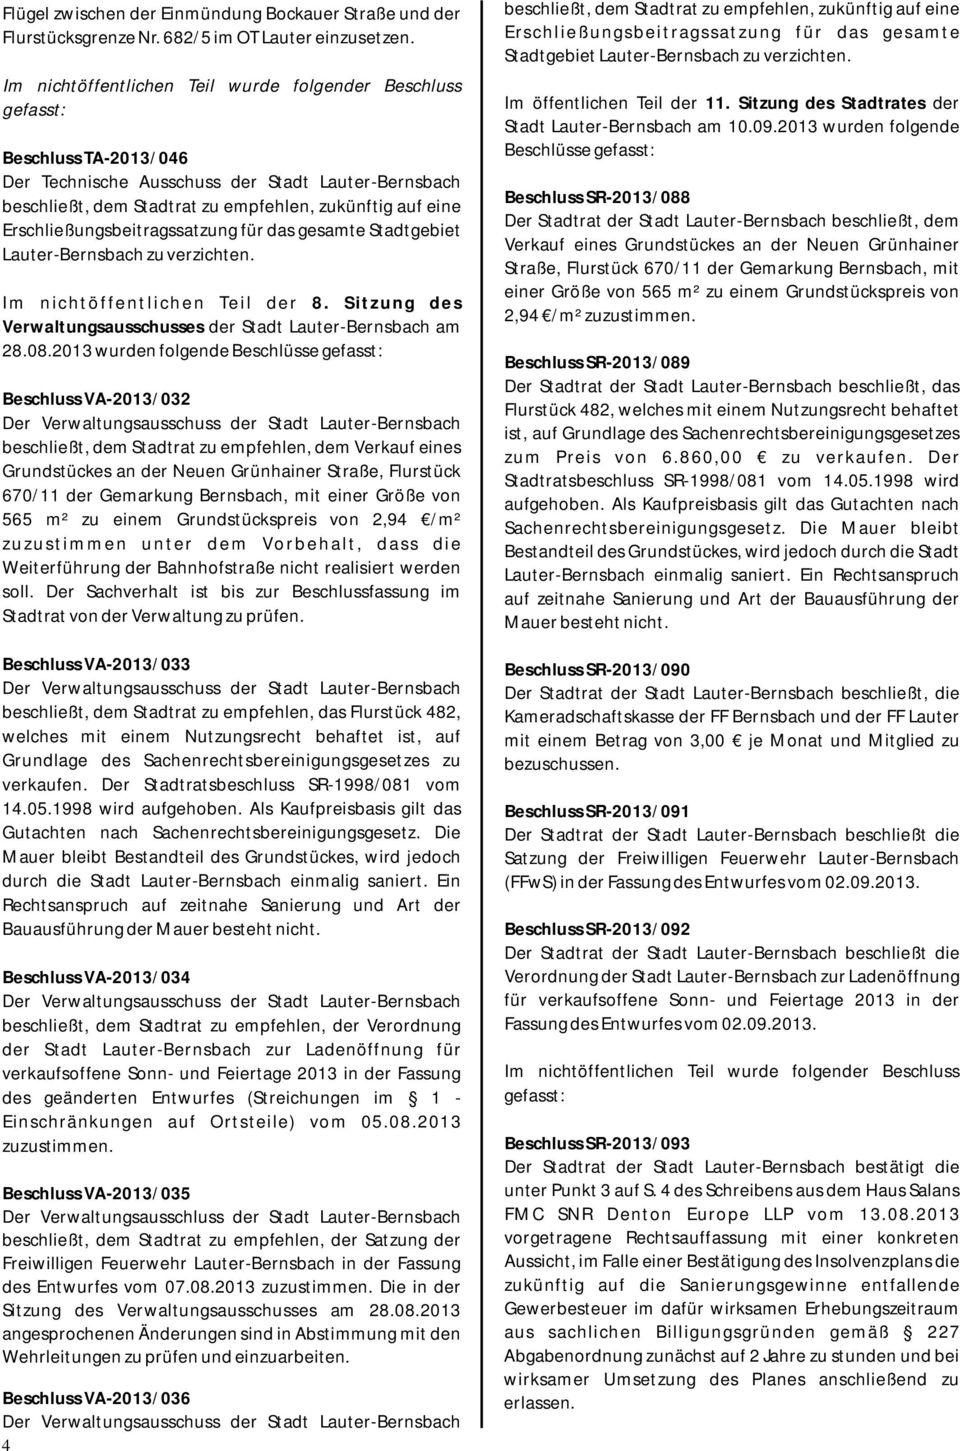 Erschließungsbeitragssatzung für das gesamte Stadtgebiet Lauter-Bernsbach zu verzichten. Im nichtöffentlichen Teil der 8. Sitzung des Verwaltungsausschusses der Stadt Lauter-Bernsbach am 28.08.